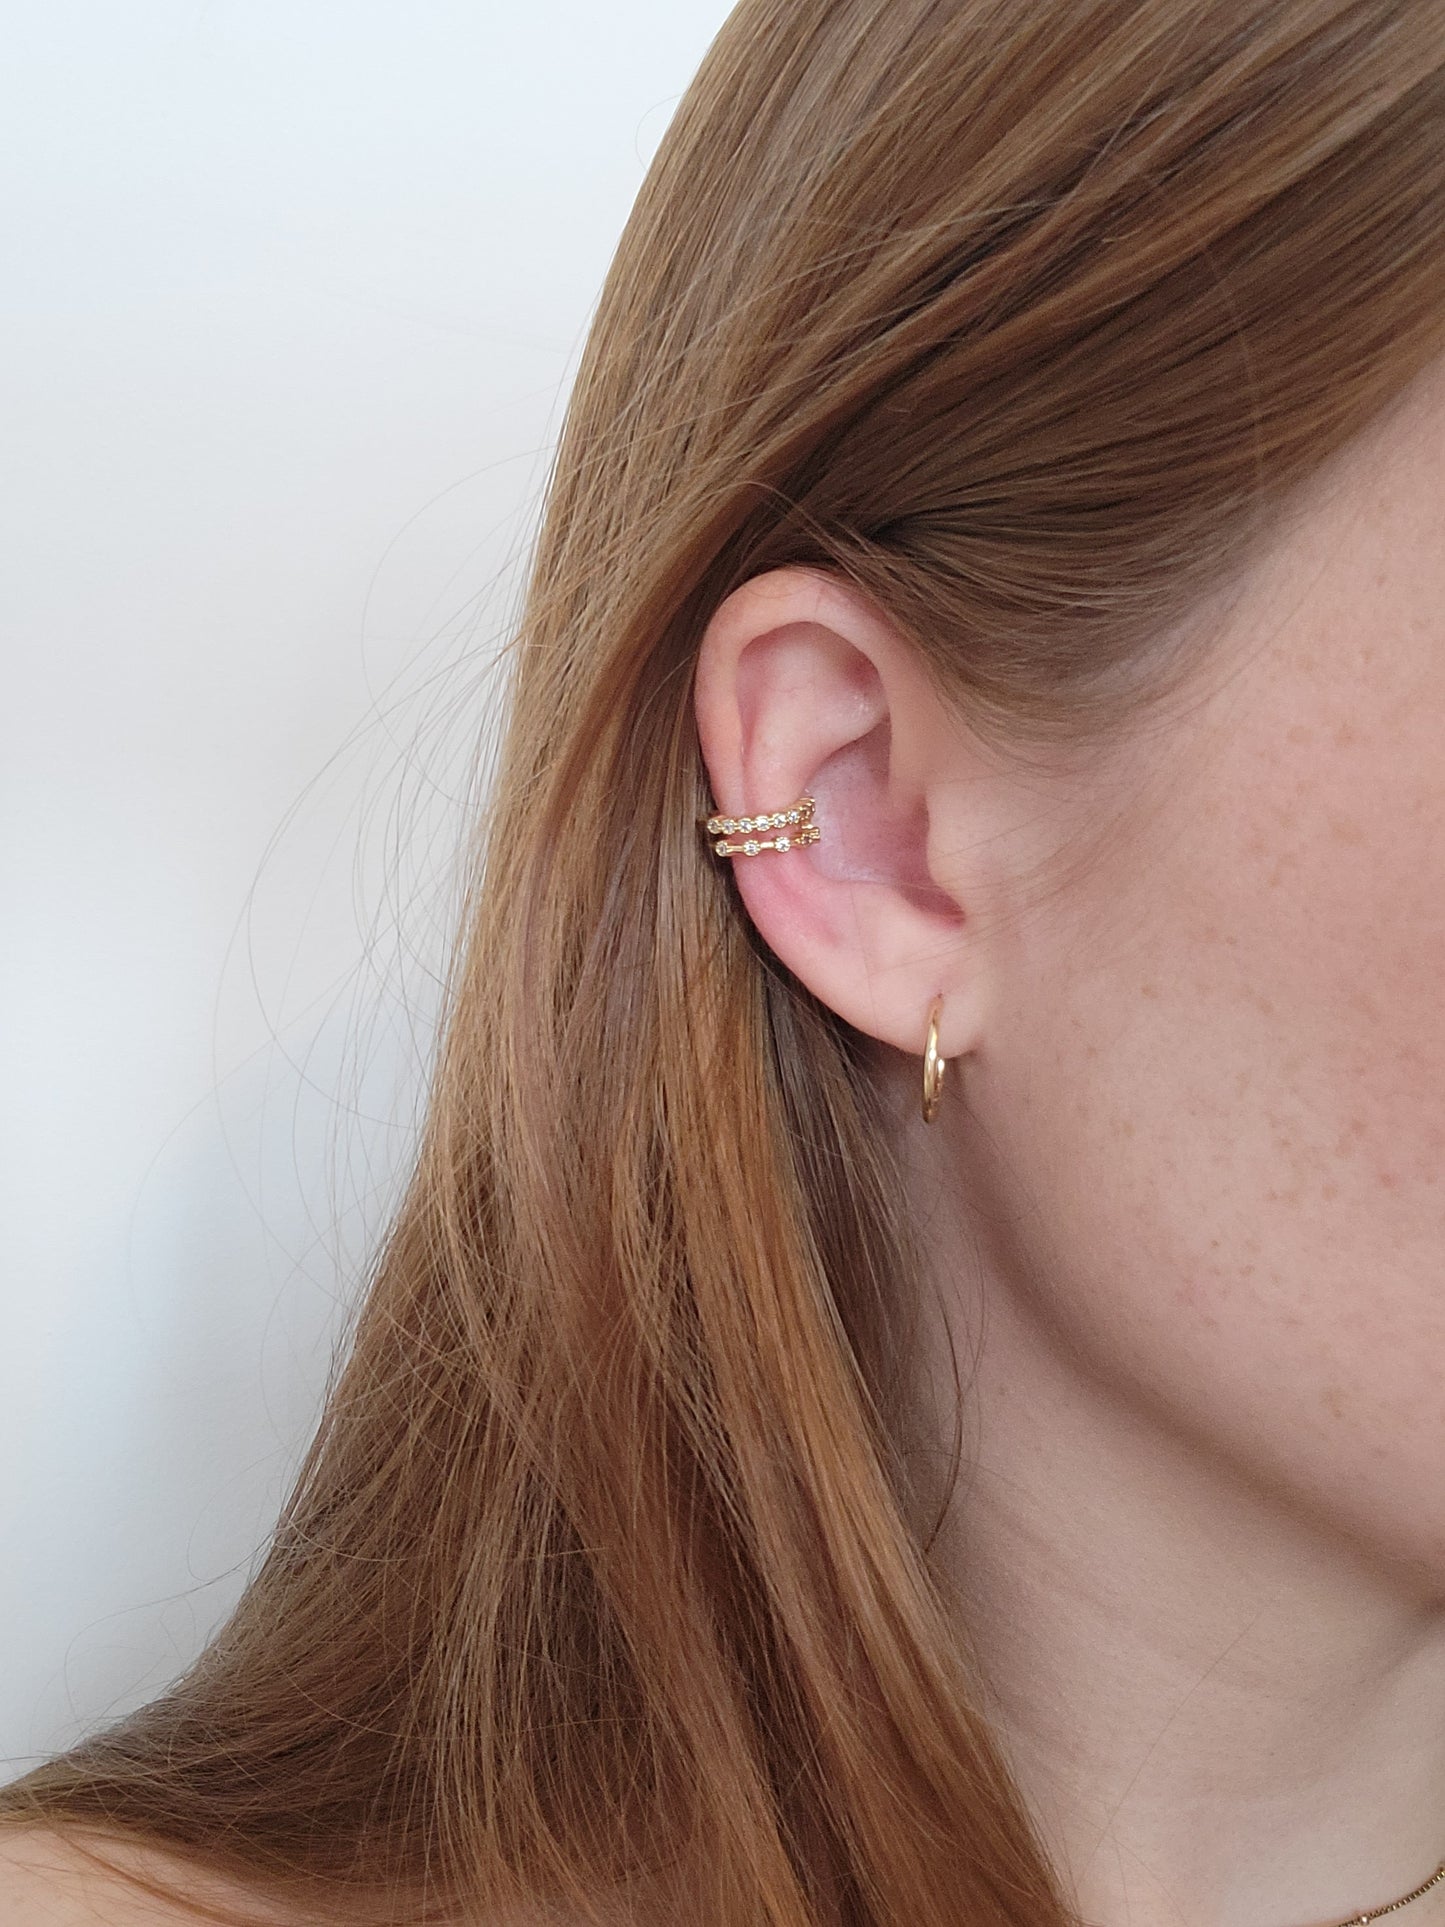 MERI - Upper Ear Crystal Gold Cuff | Cartilage Minimalist Ear Cuff Earrings